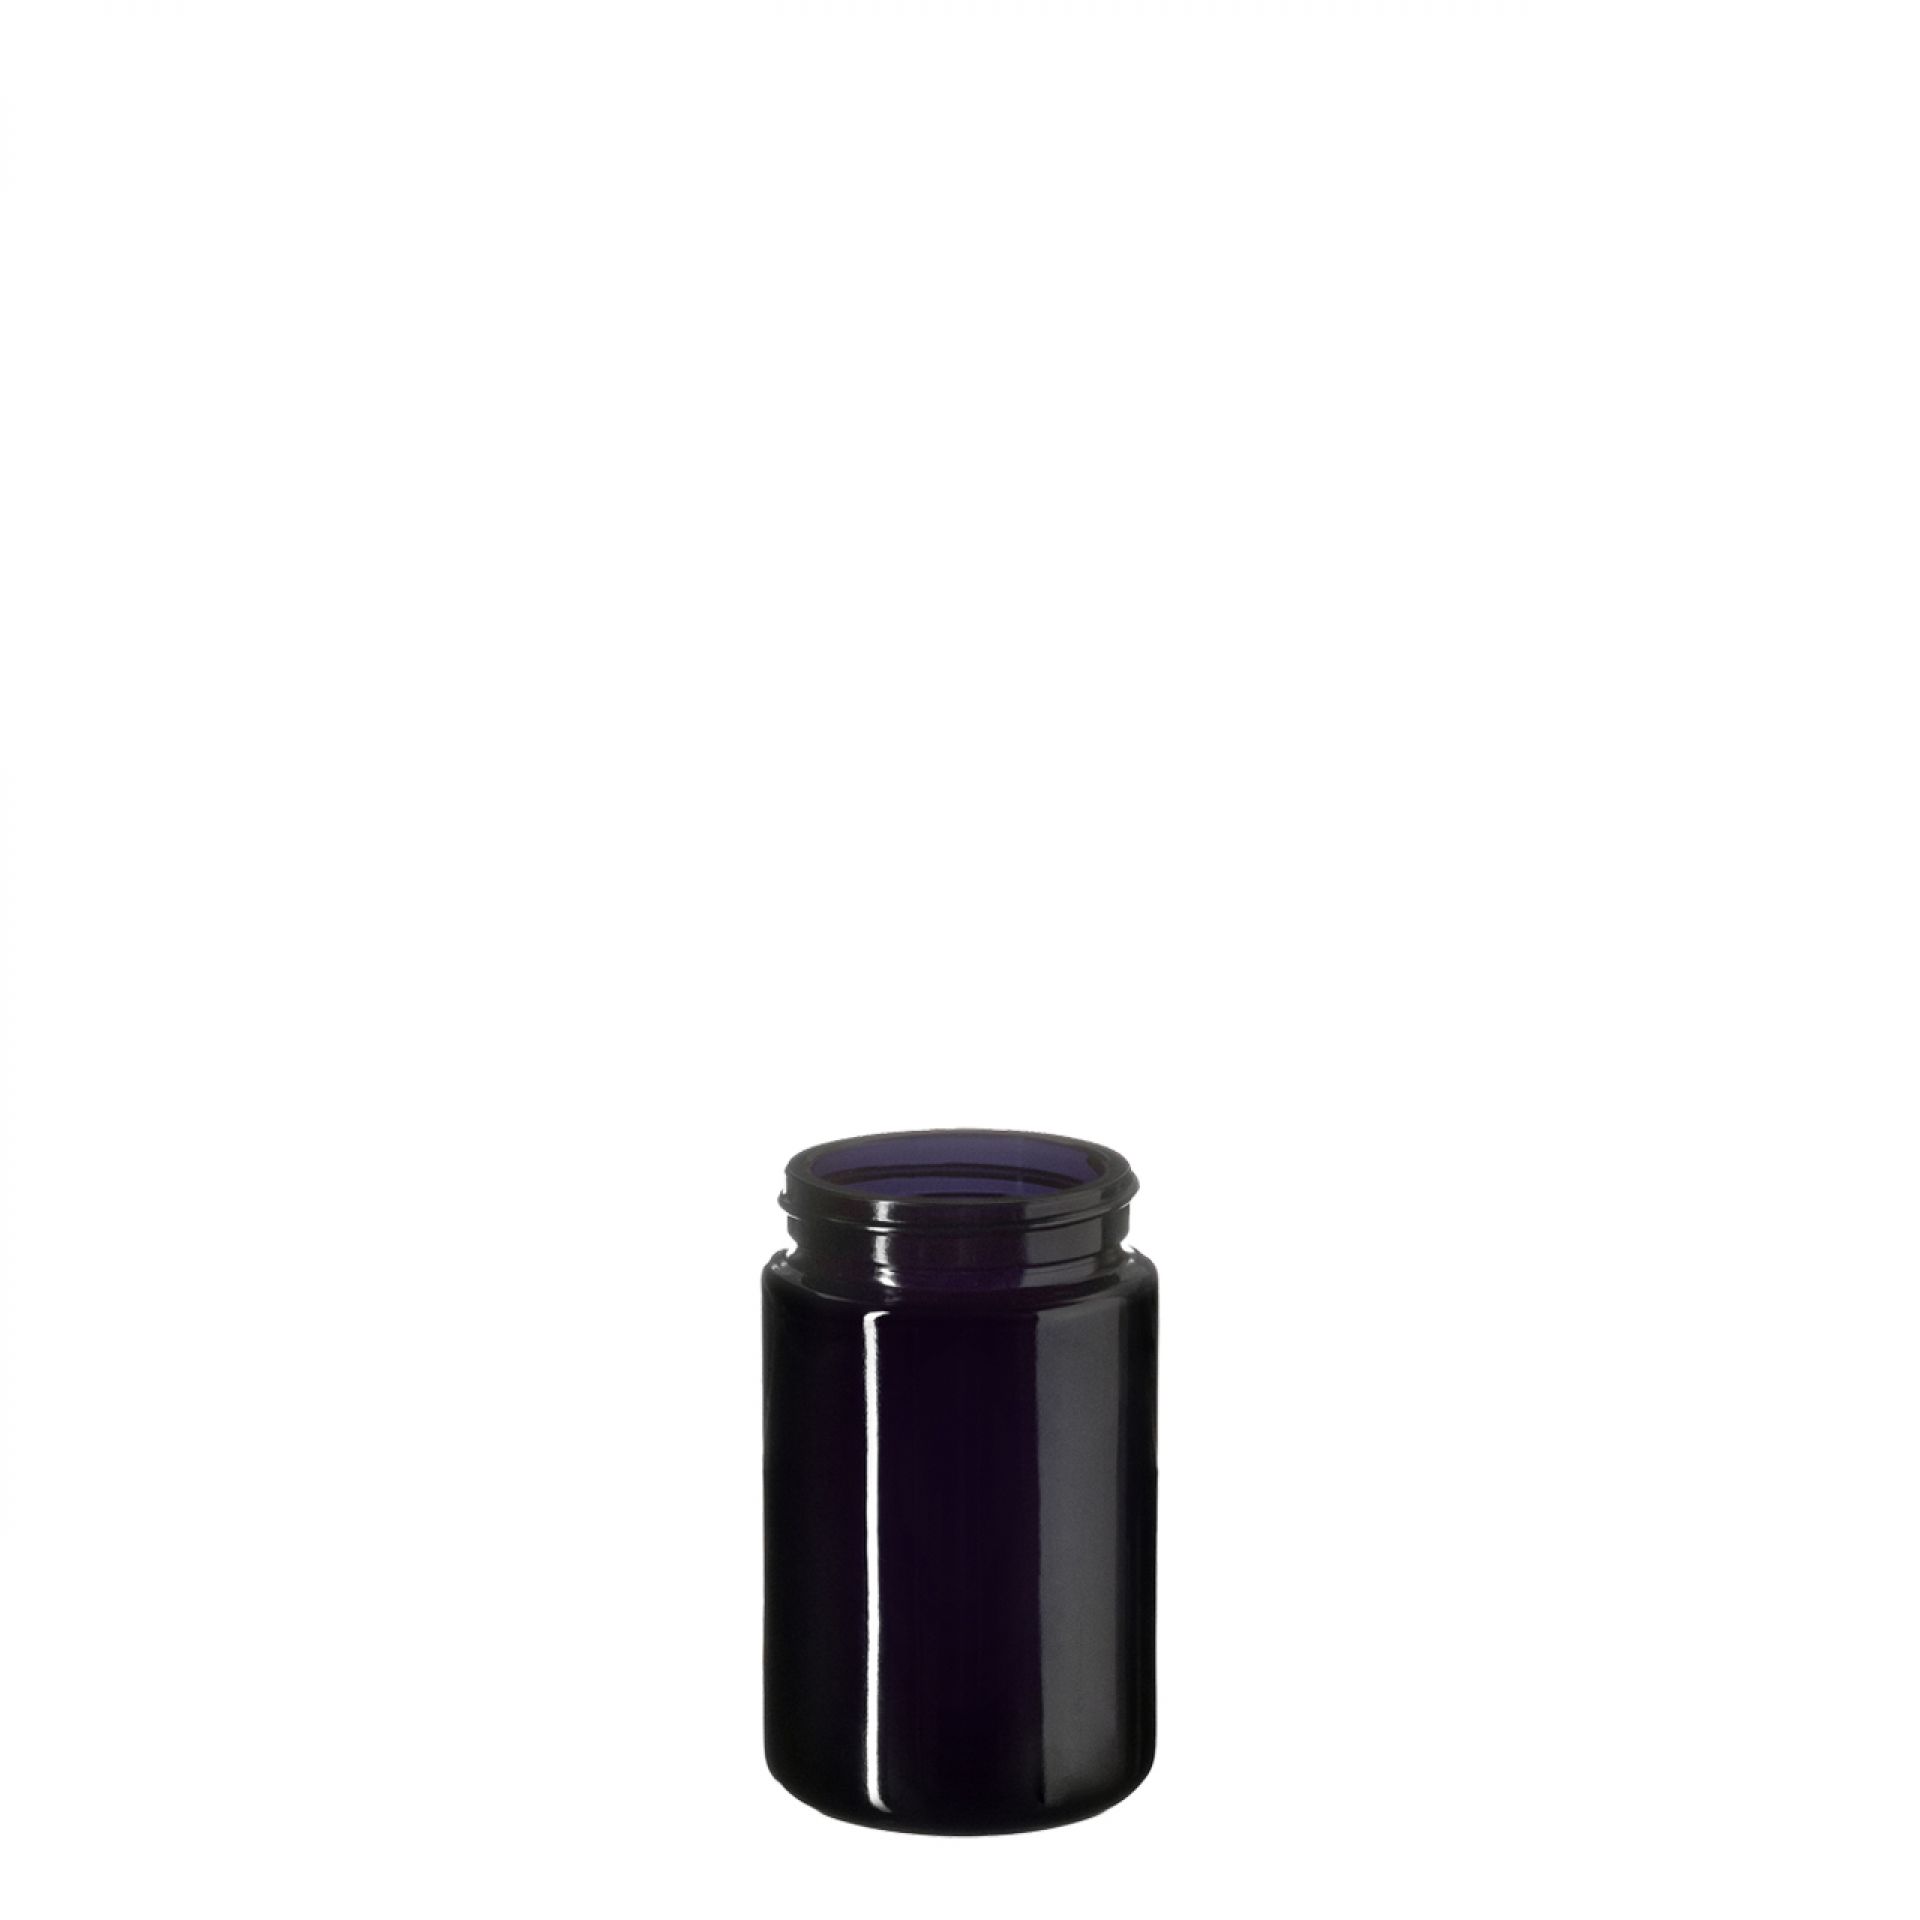 Wide neck jar Saturn 100ml, Height 84.4 mm, 48/400, Miron